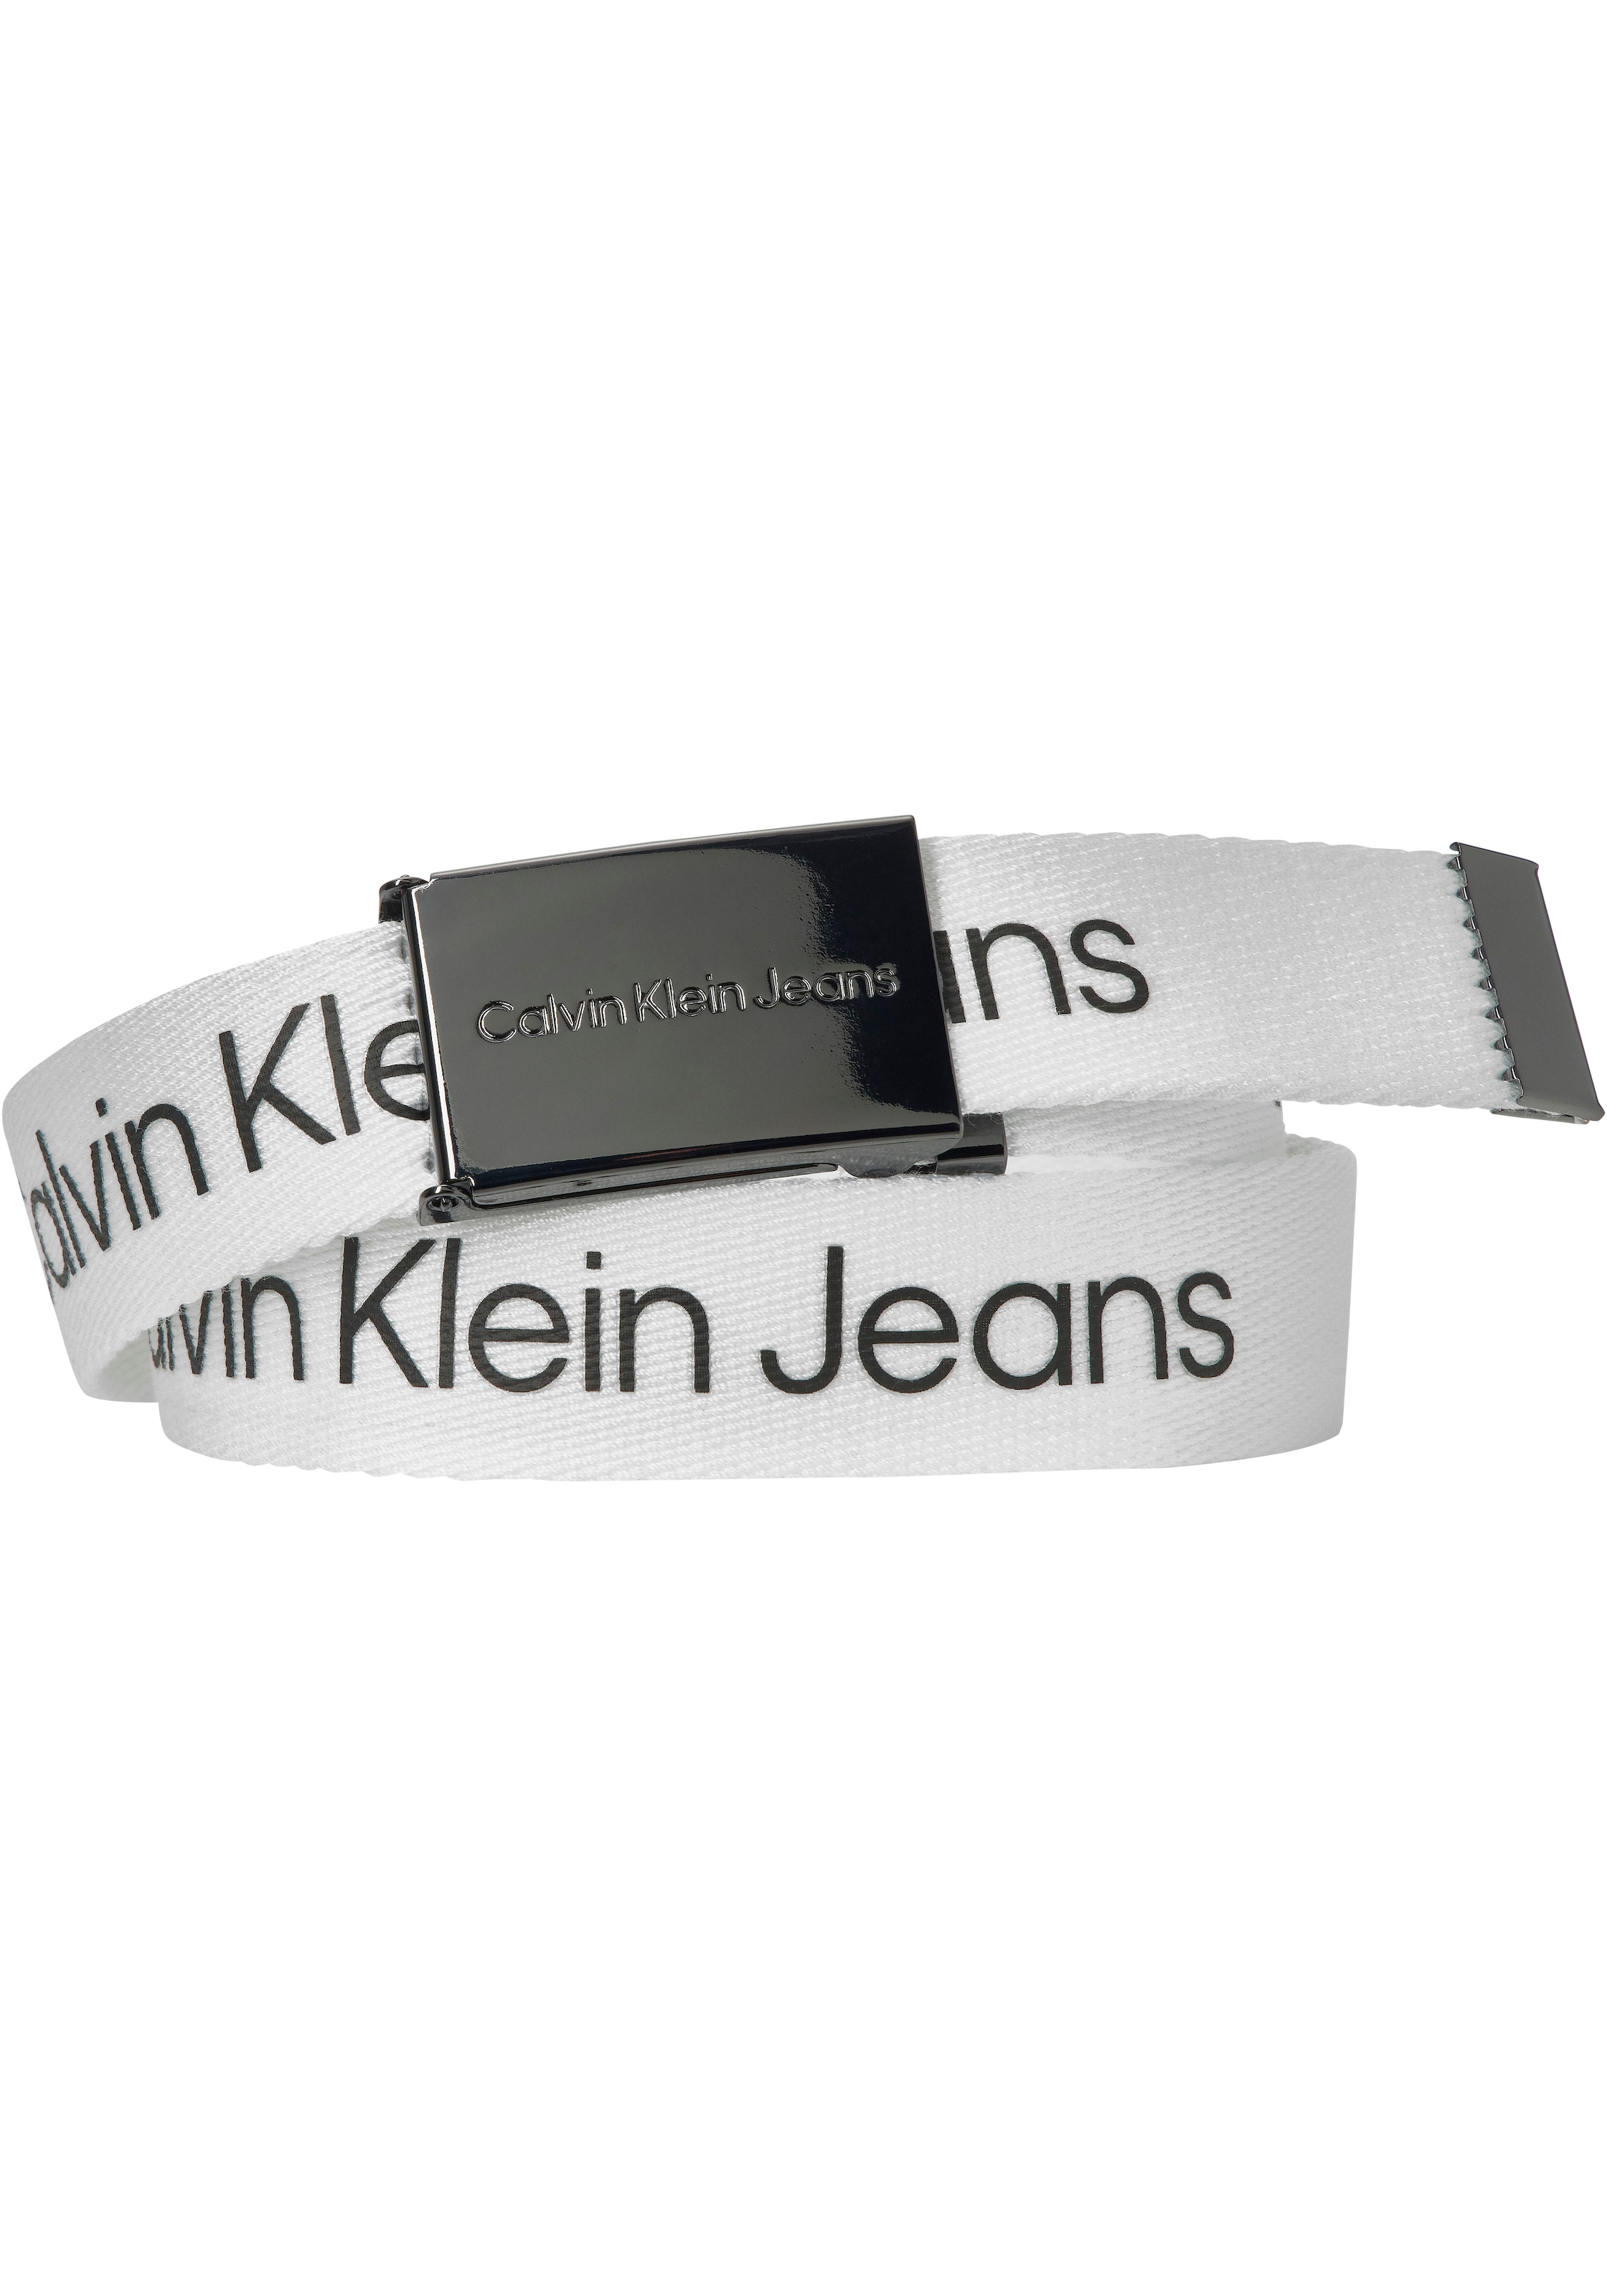 Calvin Klein Jeans kaufen LOGO Jahre Kinder online BUCKLE für METALLIC 16 Koppelgürtel BELT«, »CANVAS bis